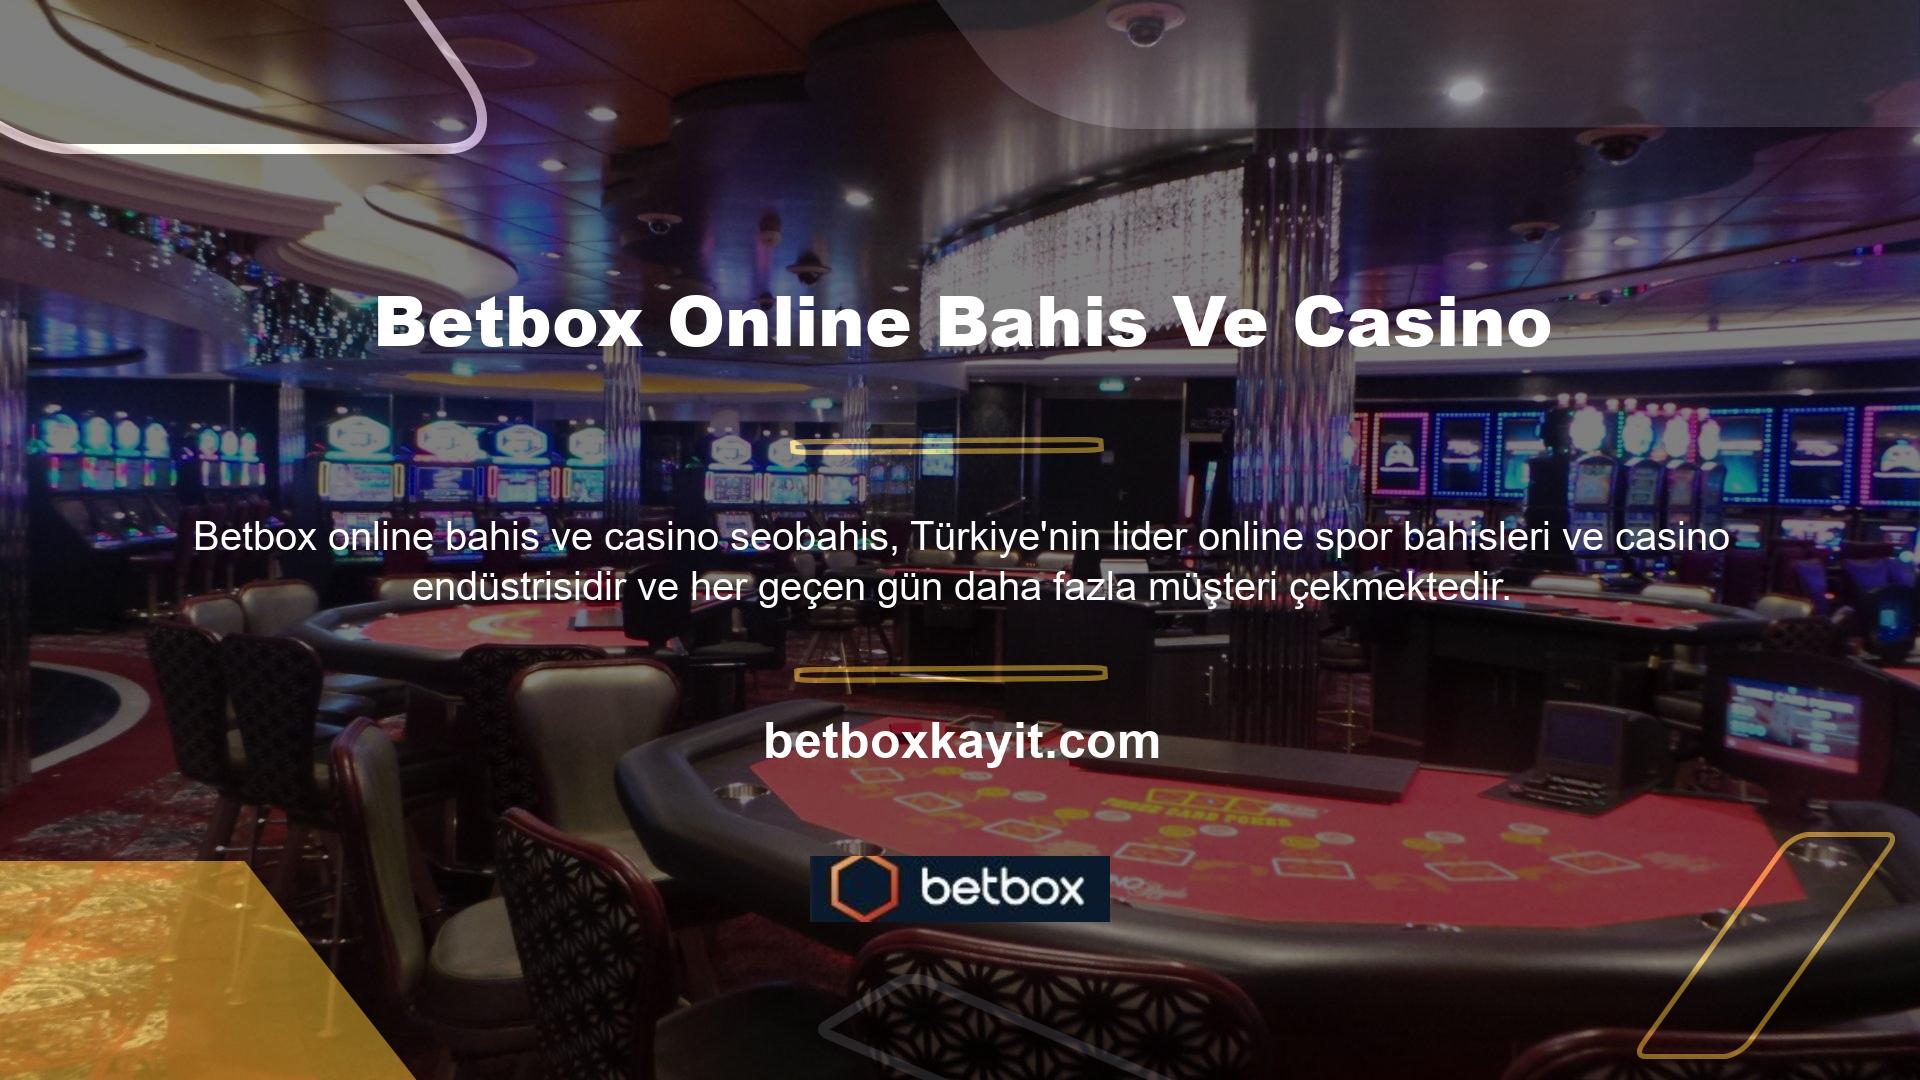 Türkiye'nin en güvenilir casino sitelerinden biri olan ödemeler sorunsuz ve hızlıdır